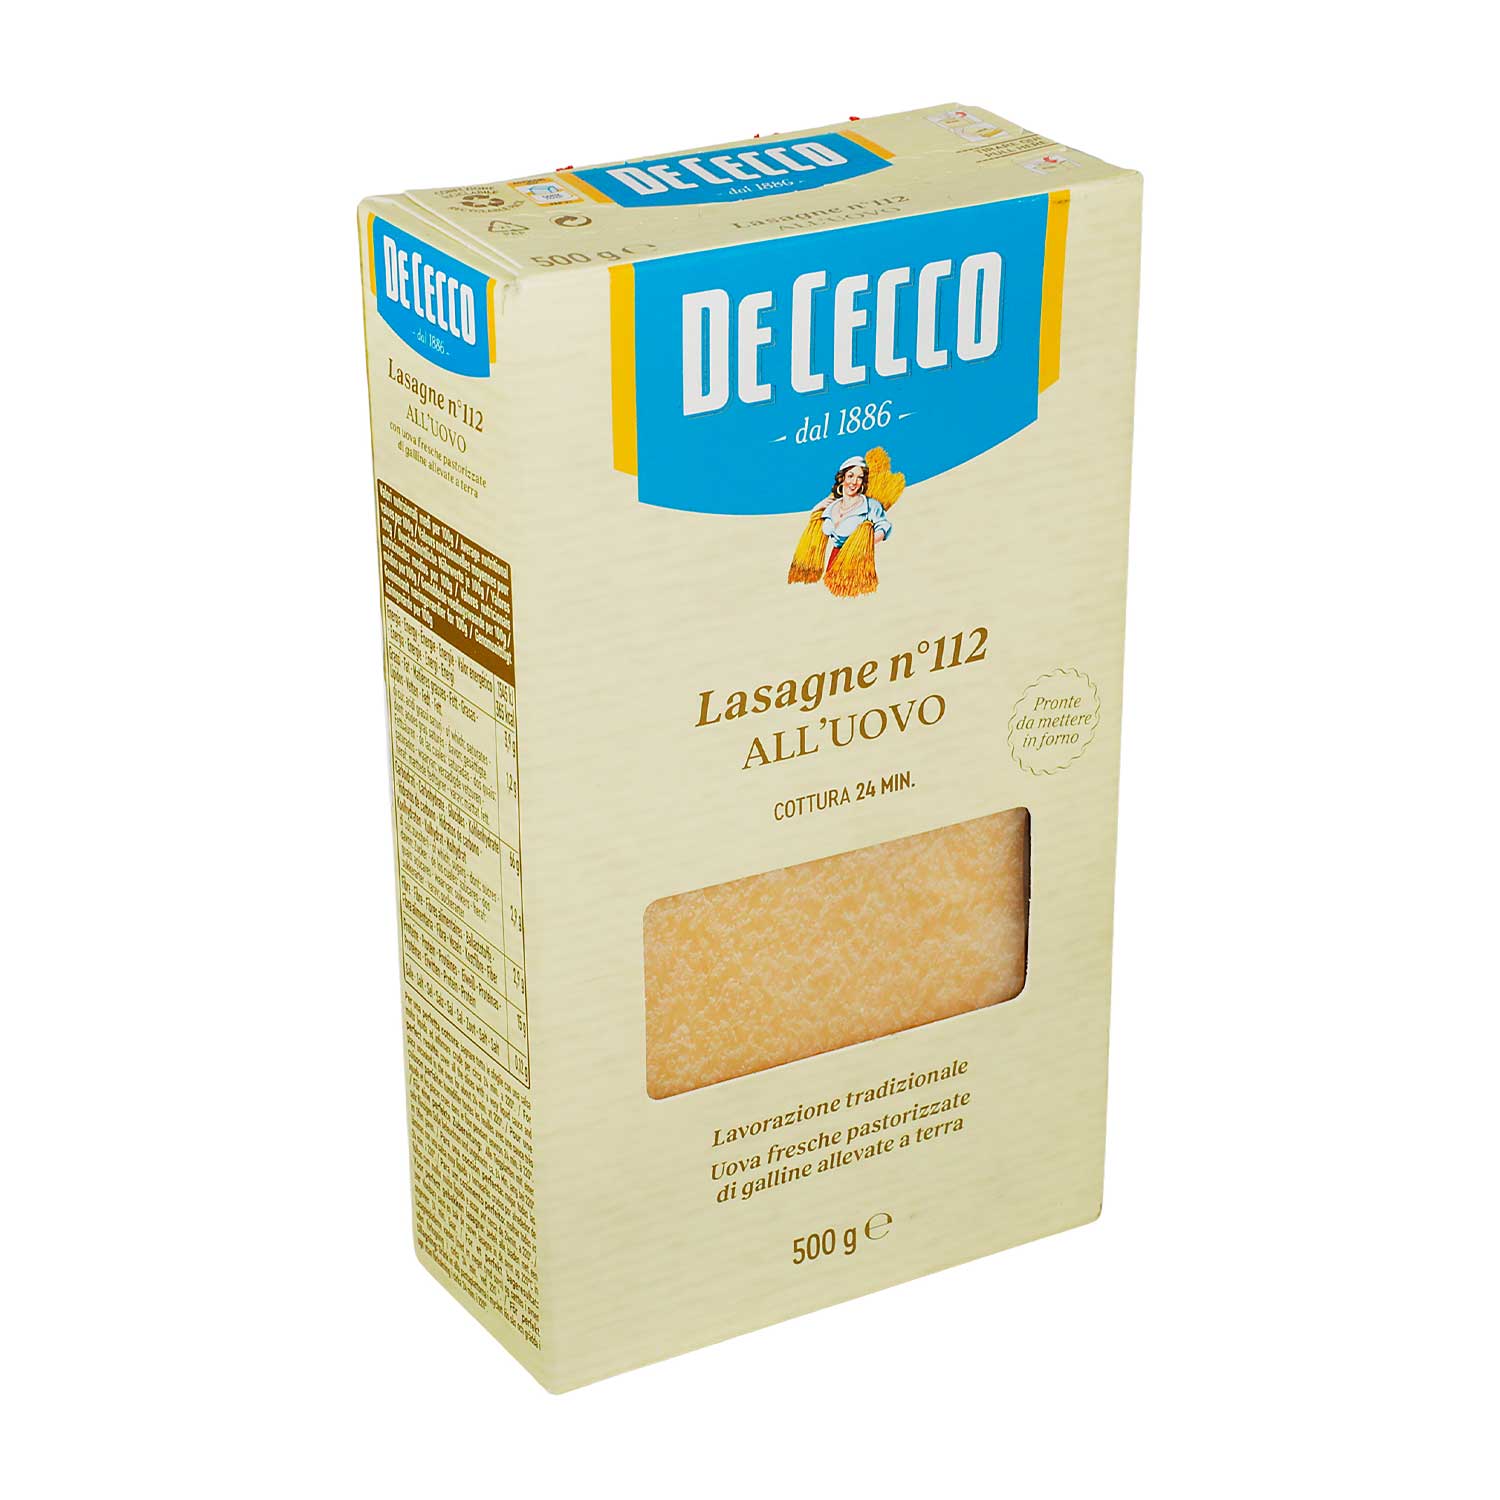 De Cecco - Pasta Lasagna con Huevo - 500 g